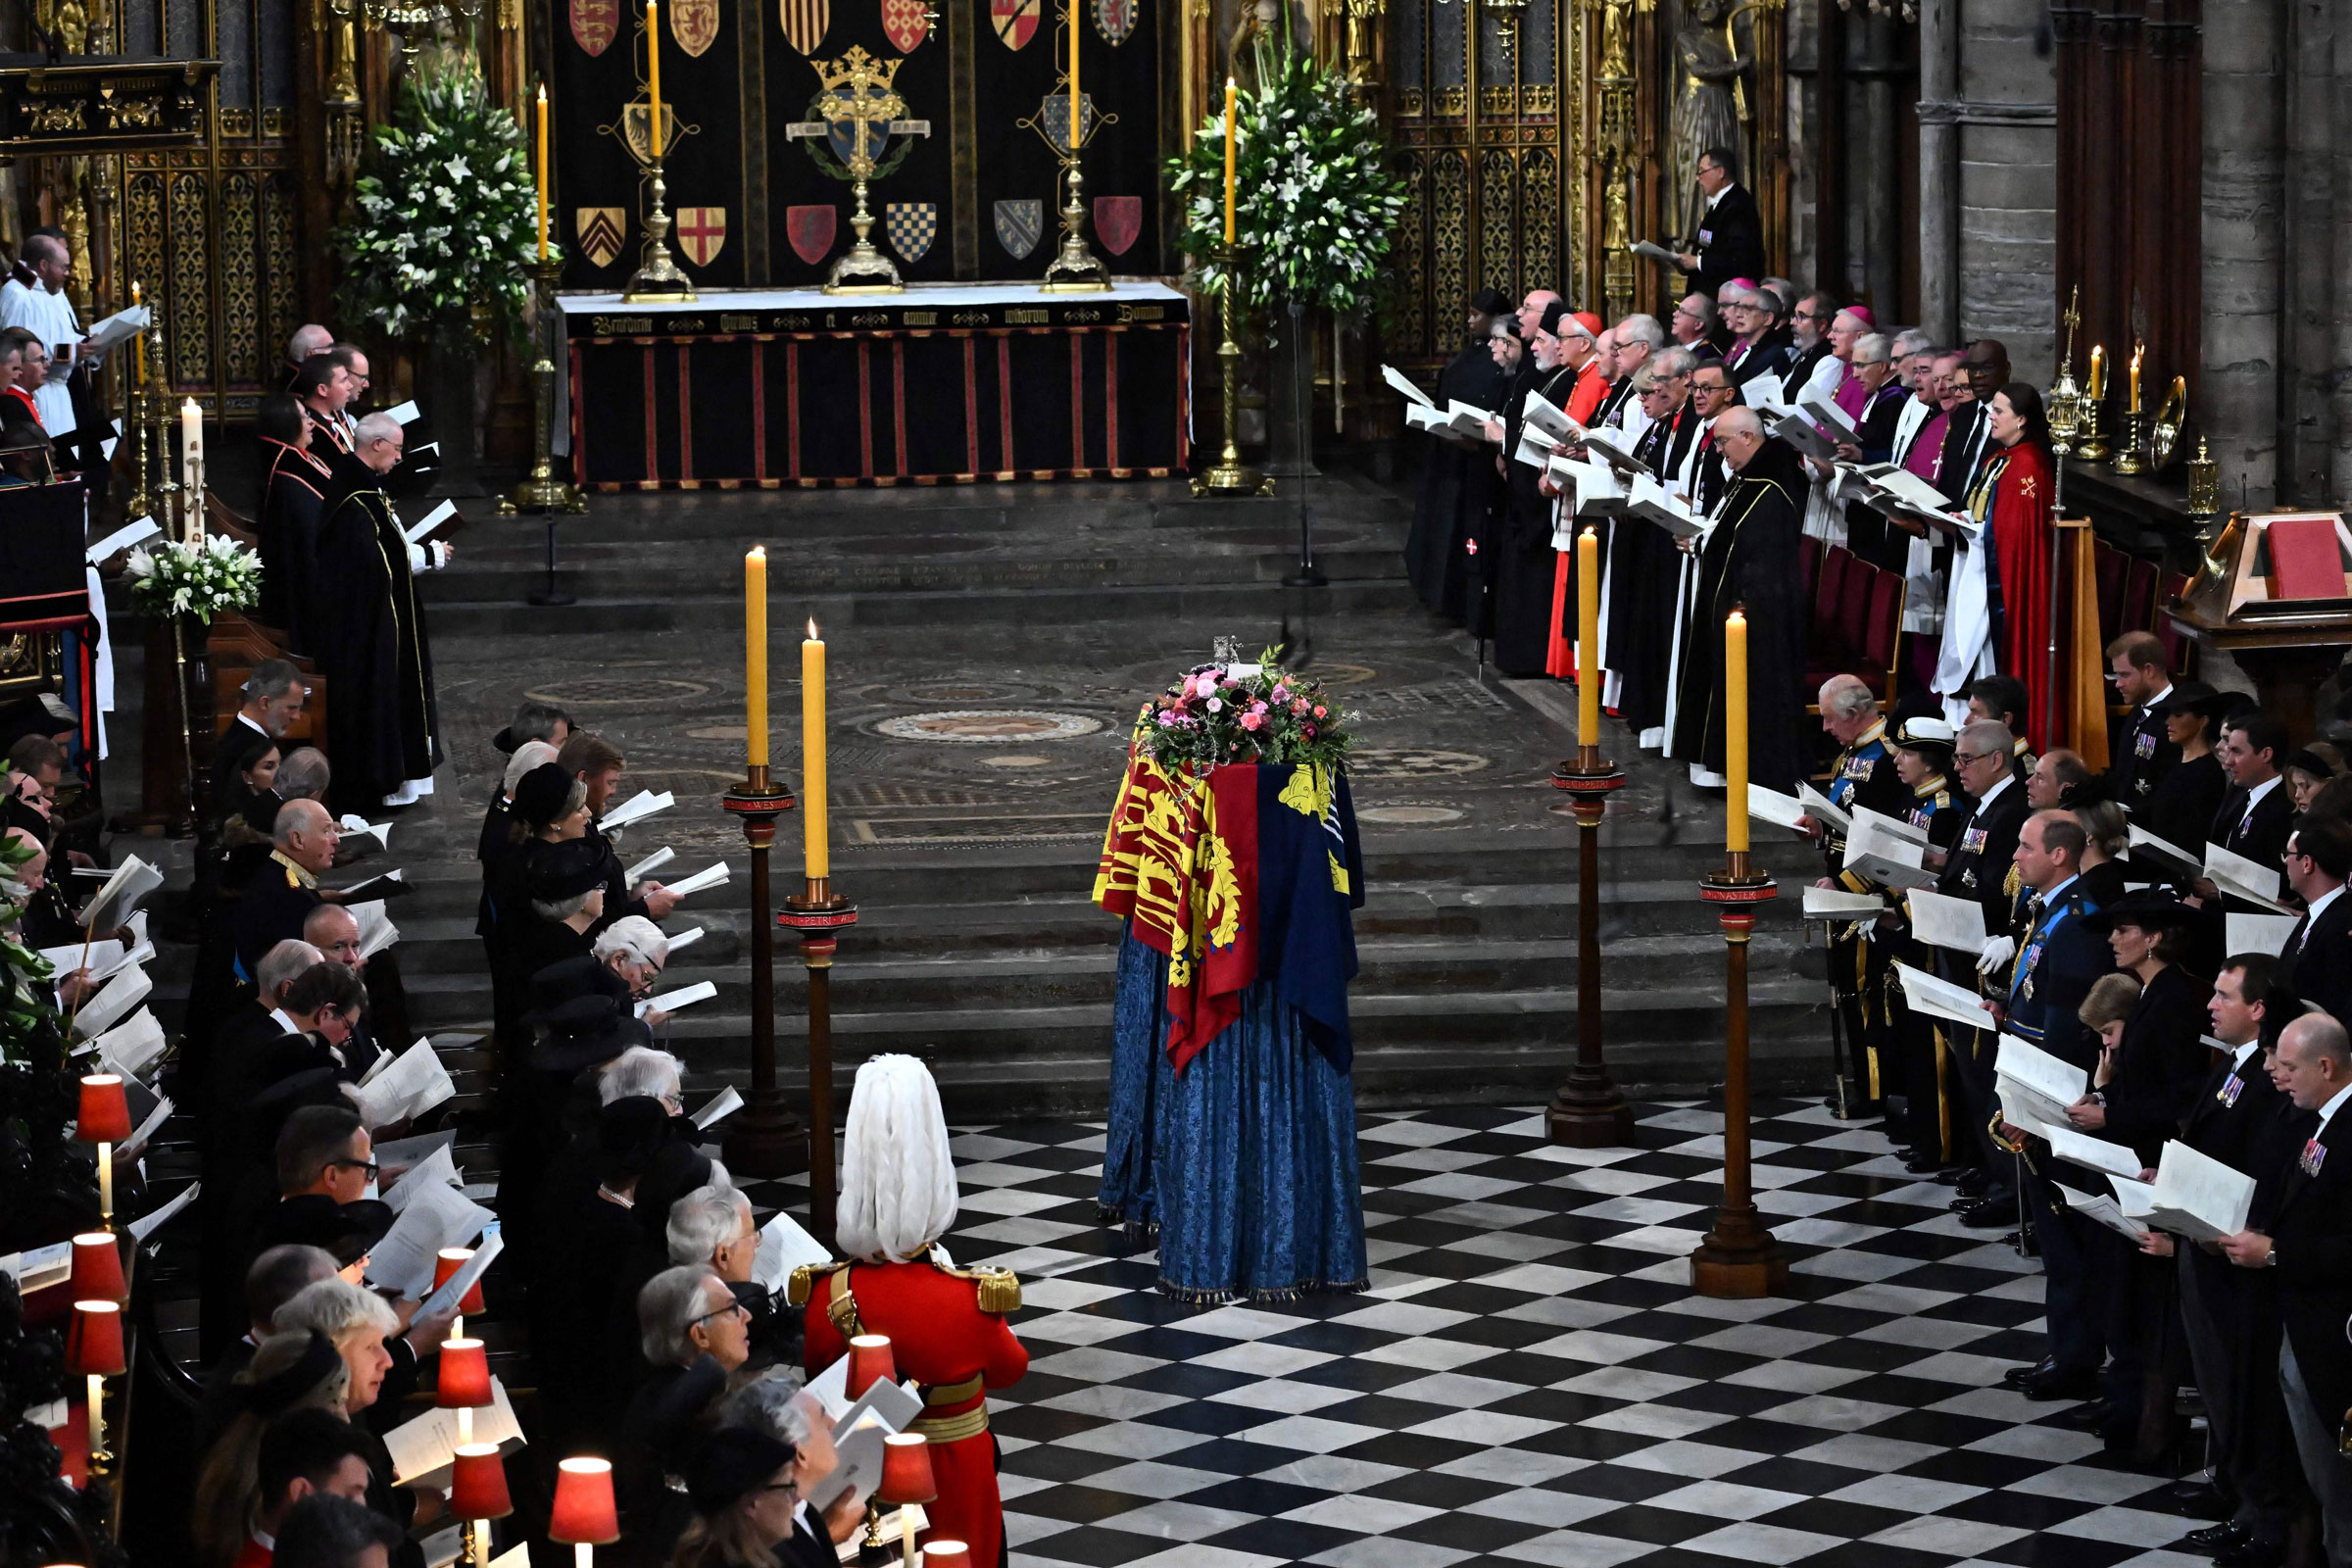 Kraliyet ailesinin üyeleri ve konuklar, Kraliçe II. Elizabeth'in Londra'daki Westminster Abbey'deki Kraliçe II. Elizabeth için devlet cenaze töreni sırasında sunağın yanında, kraliyet standardına bürünmüş tabut olarak şarkı söylerler.  (Ben Stansall—Havuz/AFP/Getty Images)